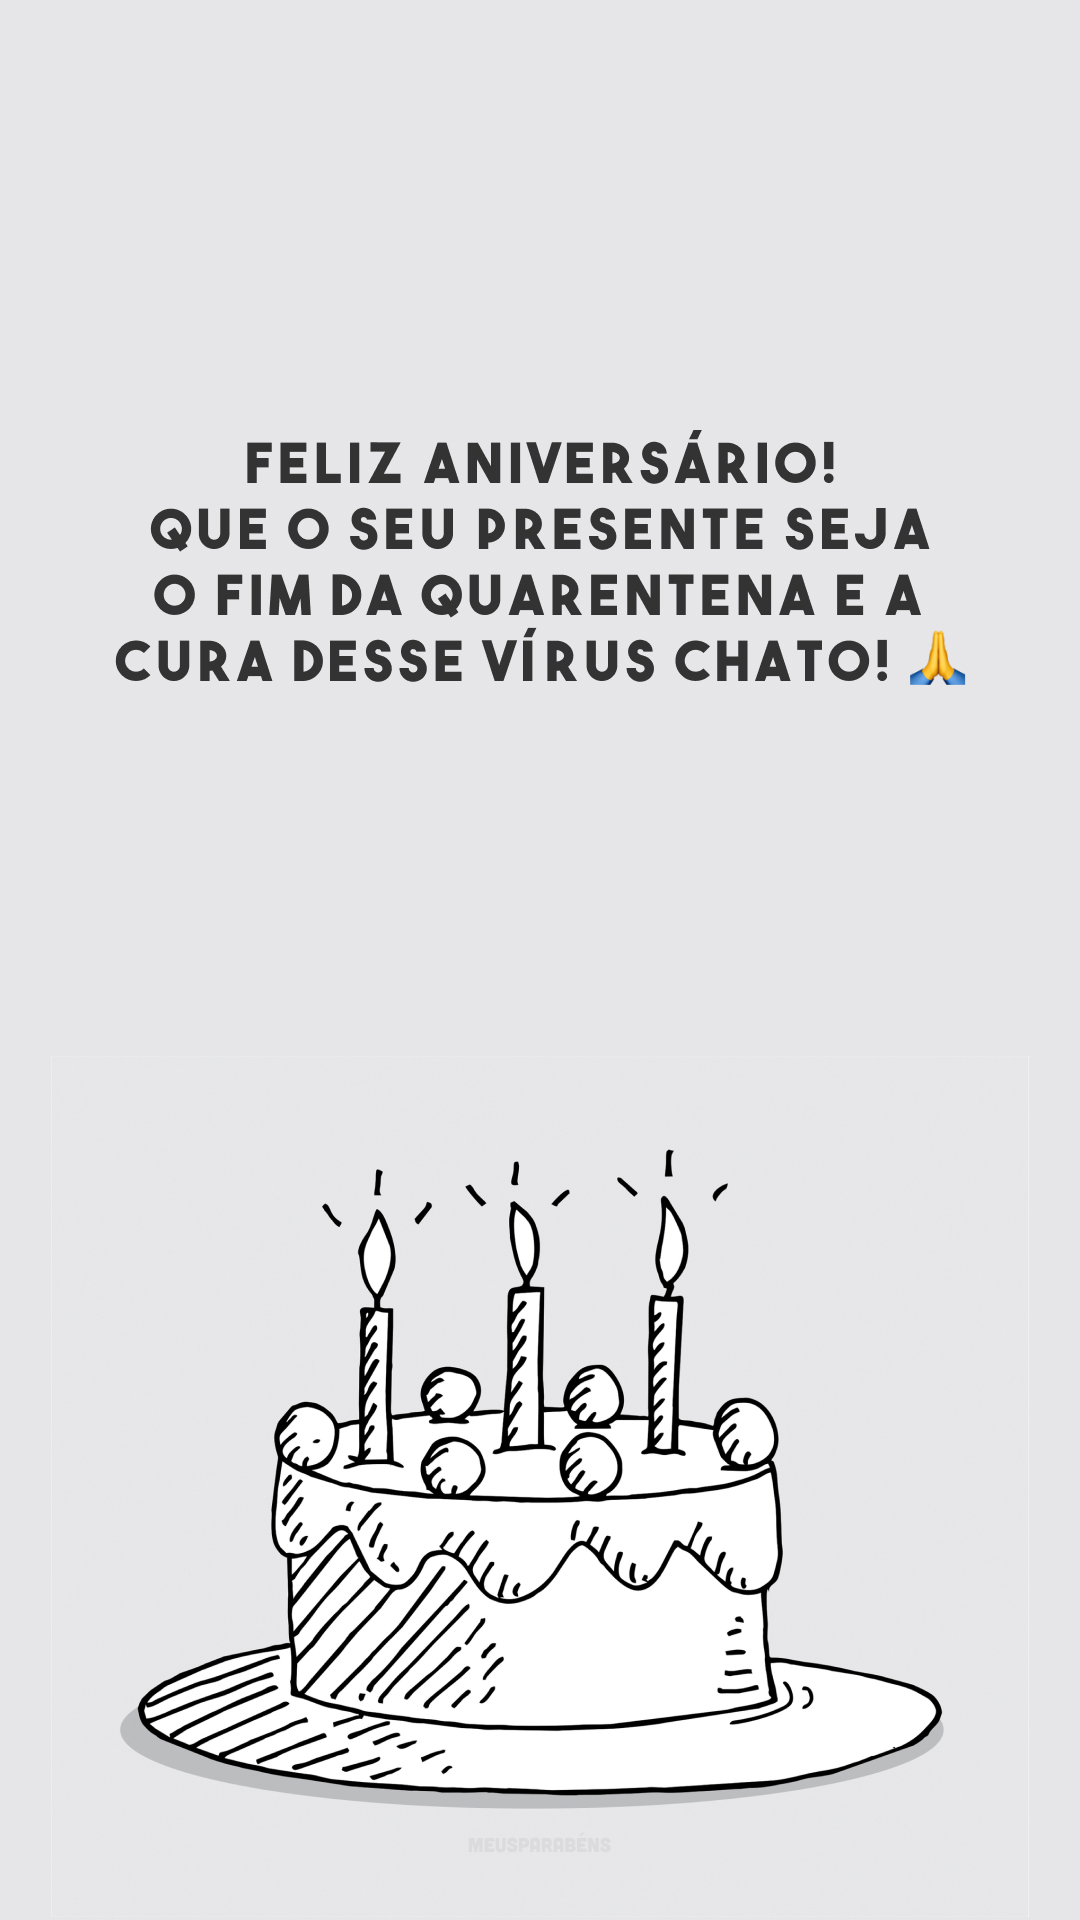 Feliz aniversário! Que o seu presente seja o fim da quarentena e a cura desse vírus chato! 🙏